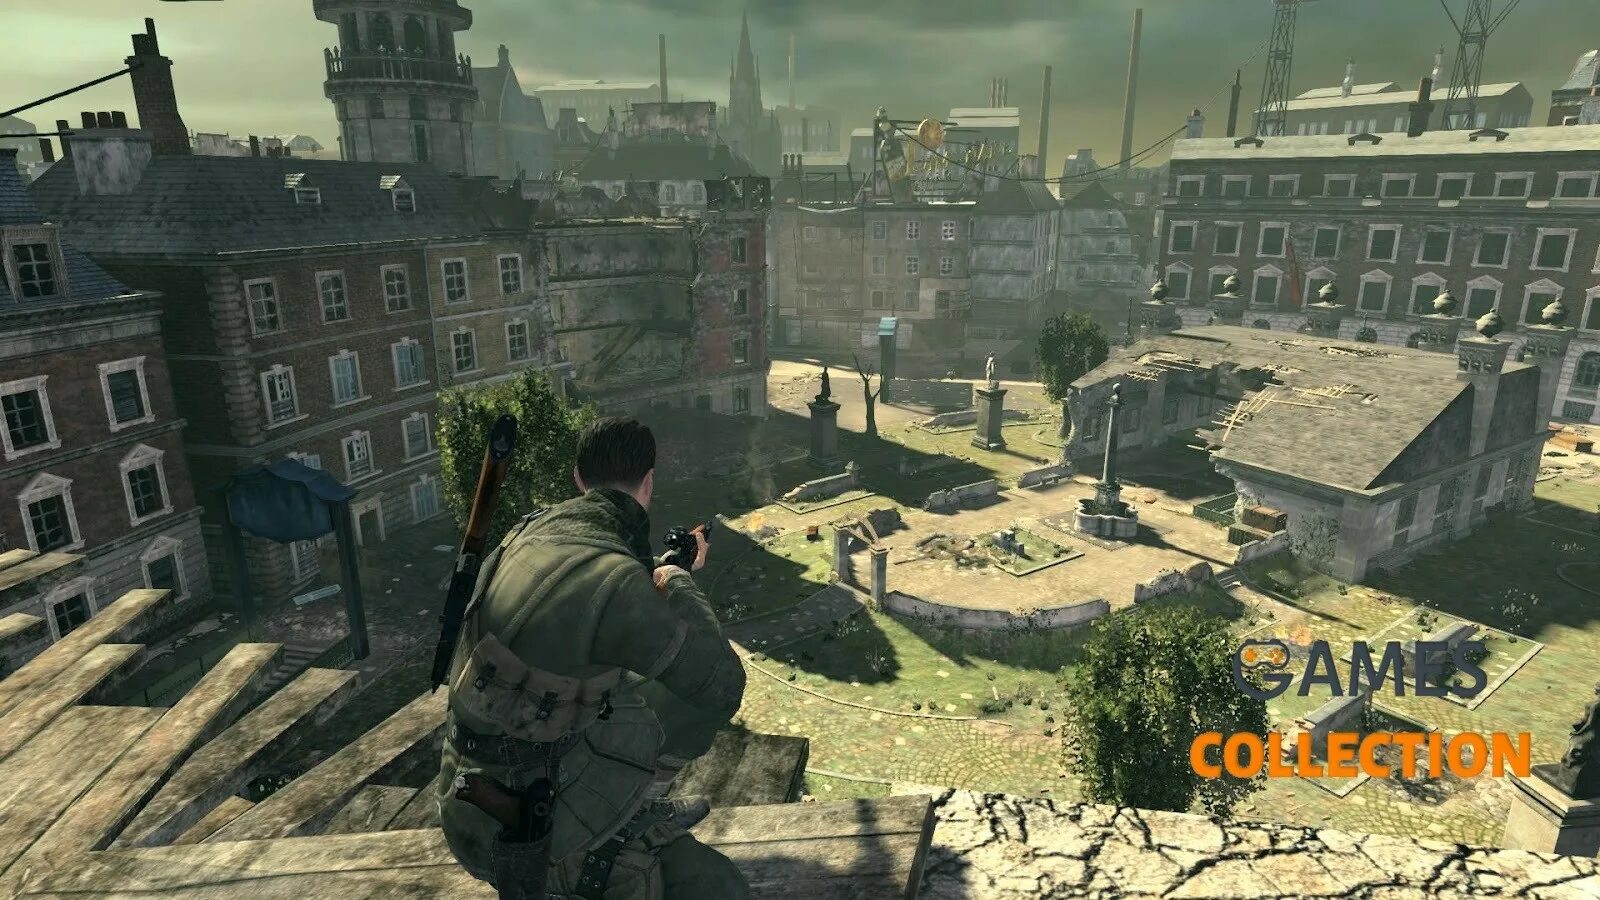 Sniper Elite v2 Xbox 360. Sniper Elite 2 Xbox 360. Sniper Elite v2 Remastered. Sniper Elite III Xbox 360.